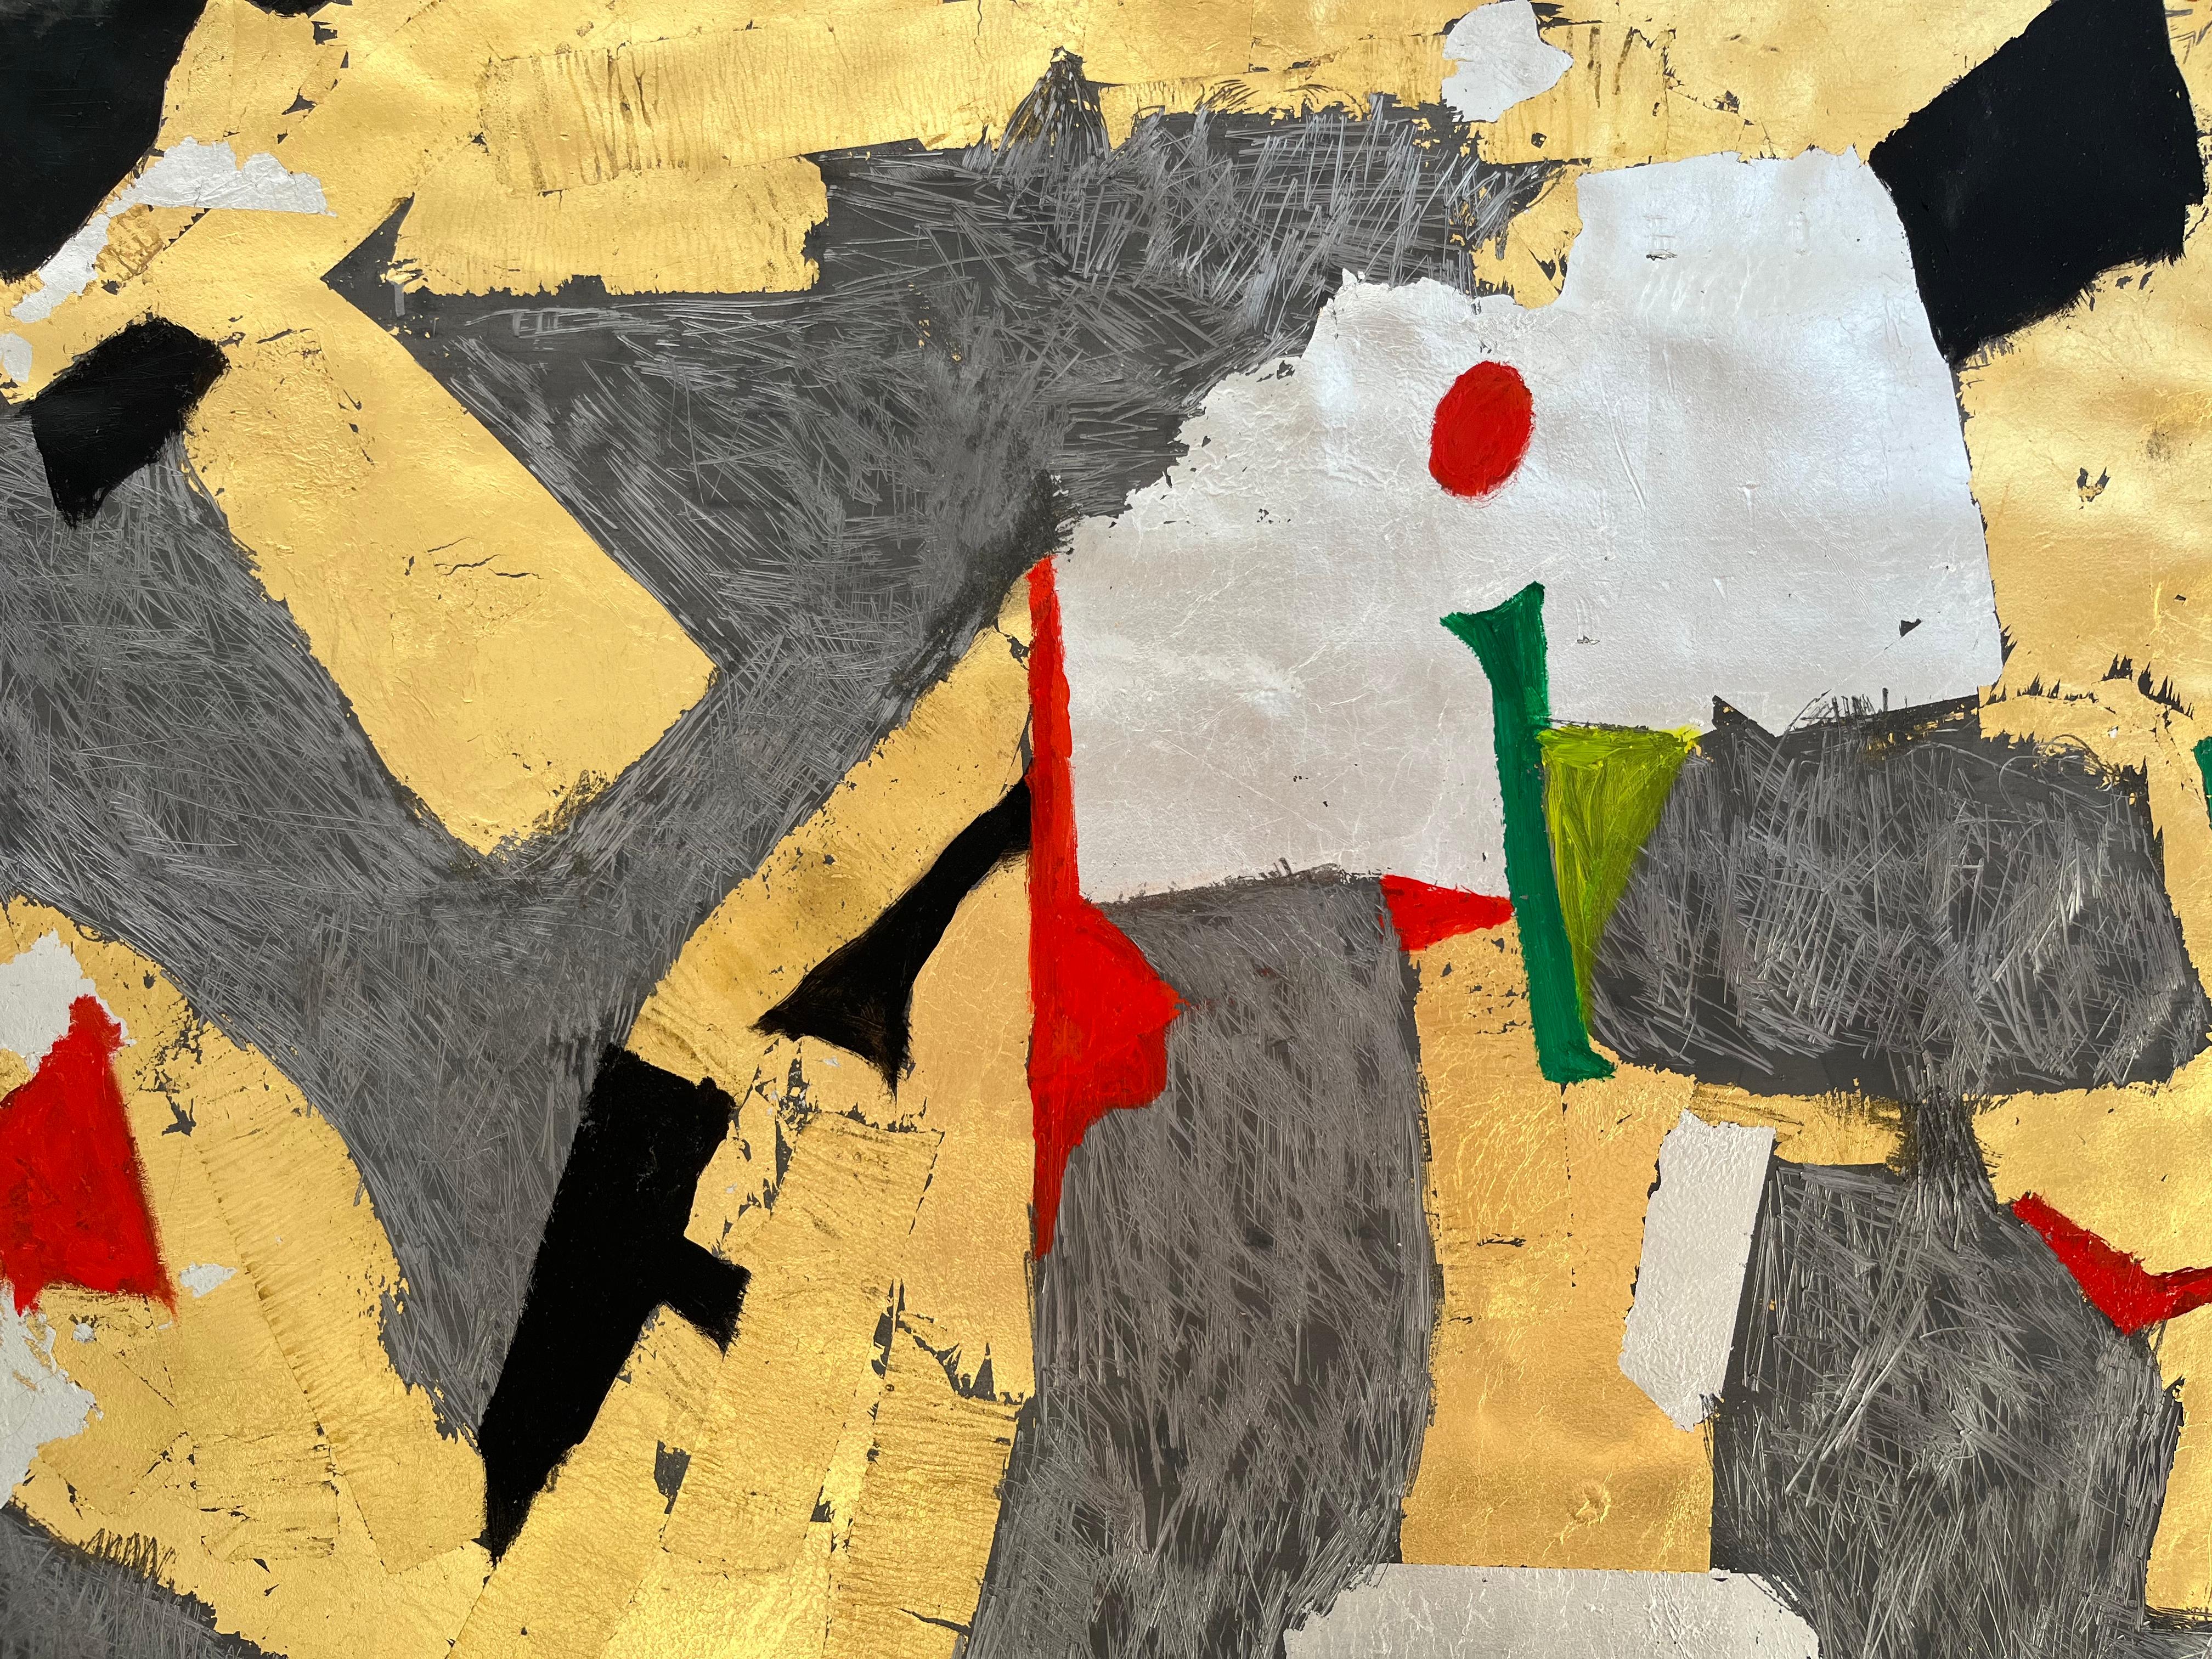 Une œuvre abstraite rare de l'indélébile Giancarlo Impiglia. 

Né à Rome, Impiglia s'est installé à New York dans les années 70, où il a établi une signature sur les épaules du futurisme et du cubisme, son habileté technique étayant son éclectisme